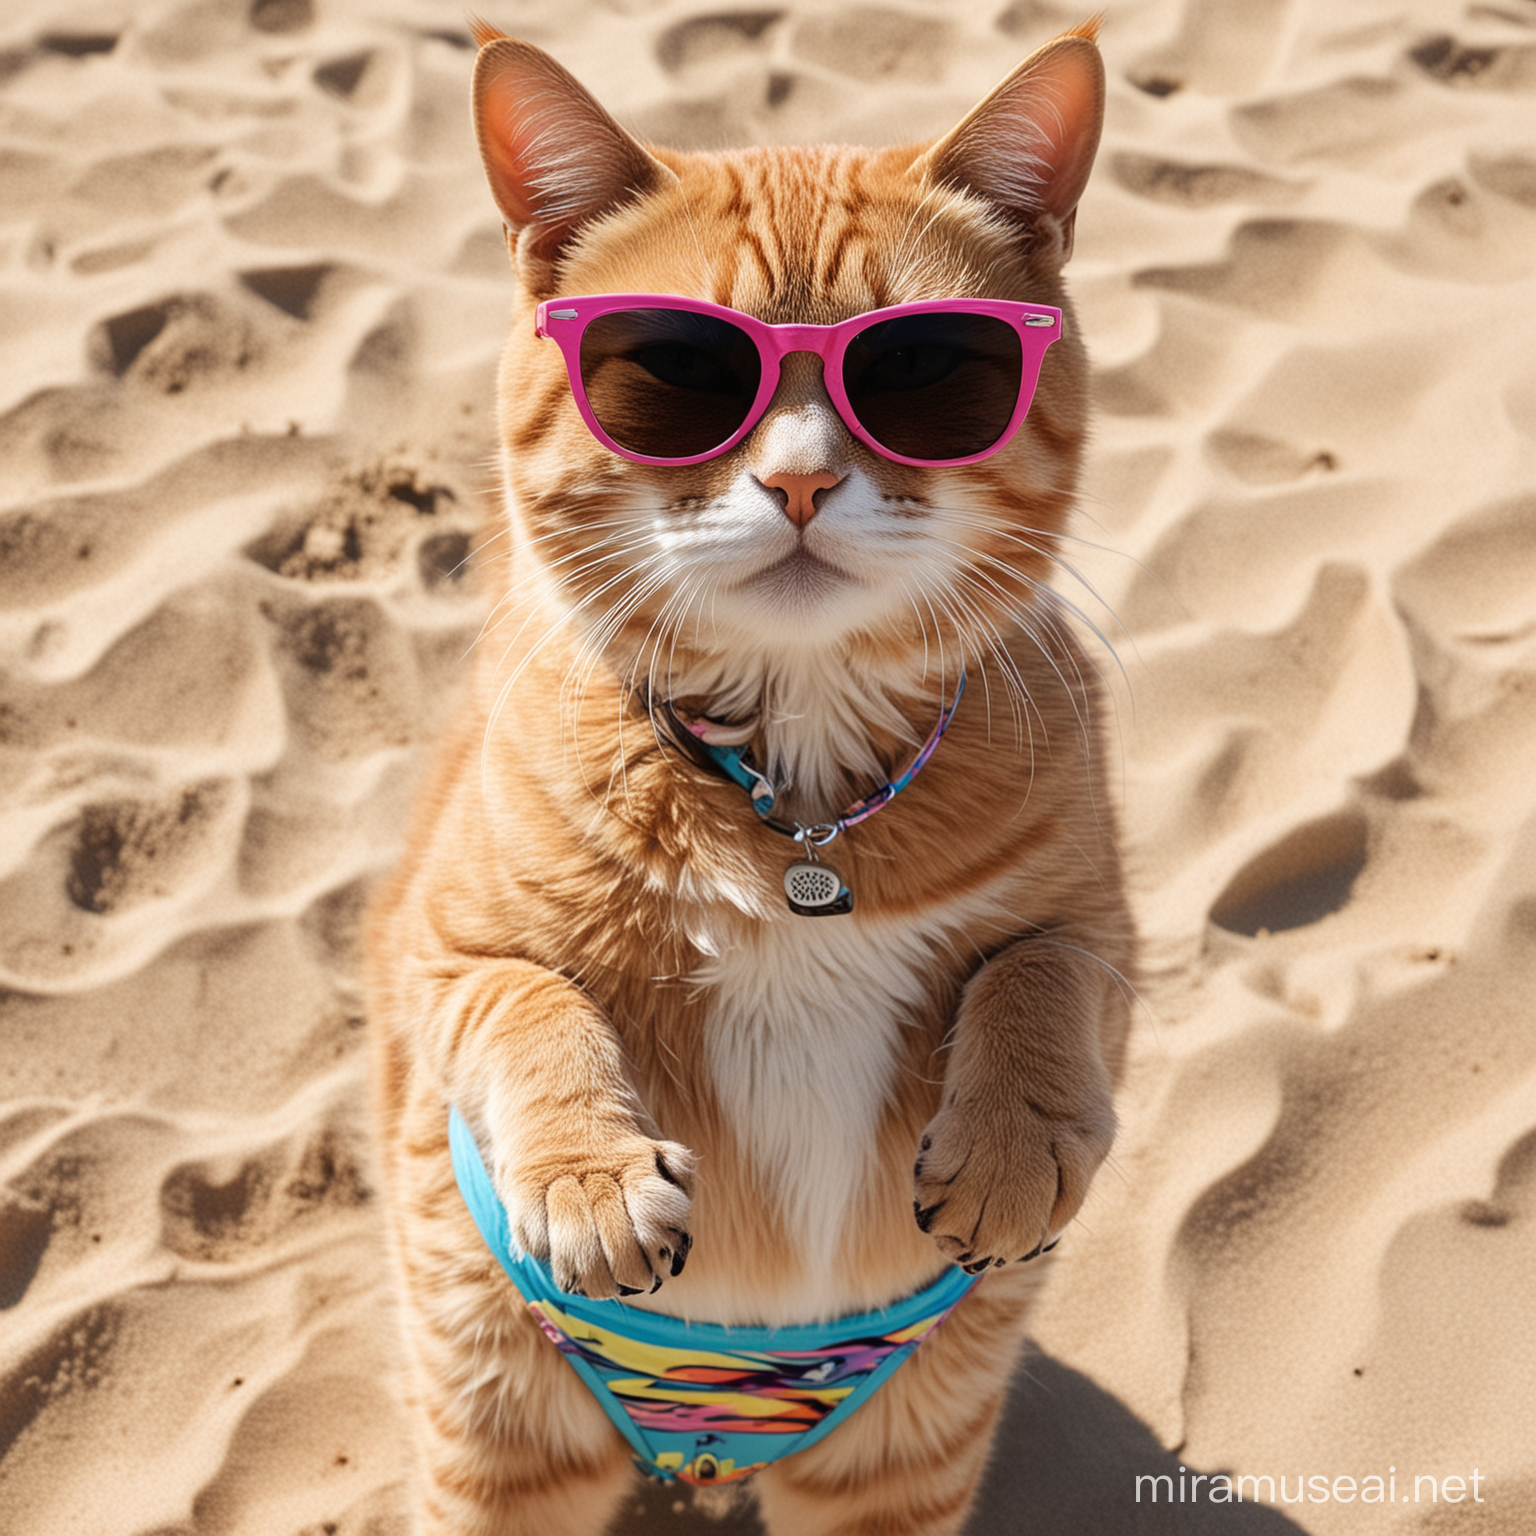 Stylish Cat Wearing Sunglasses and Bikini